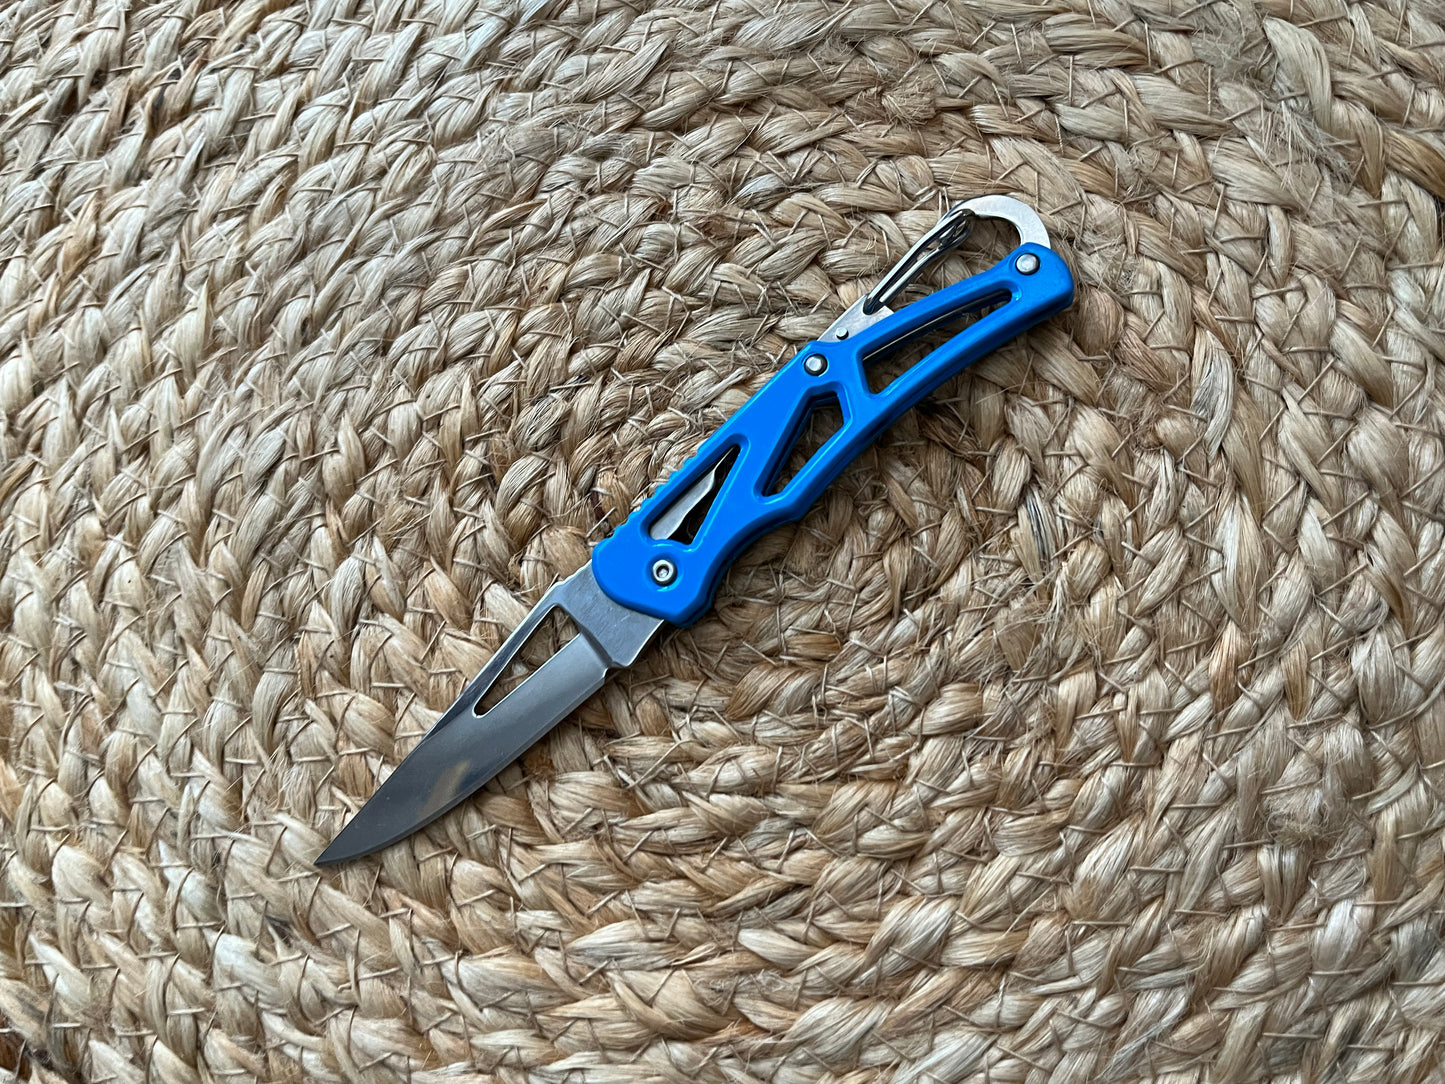 Small Pocket Knife